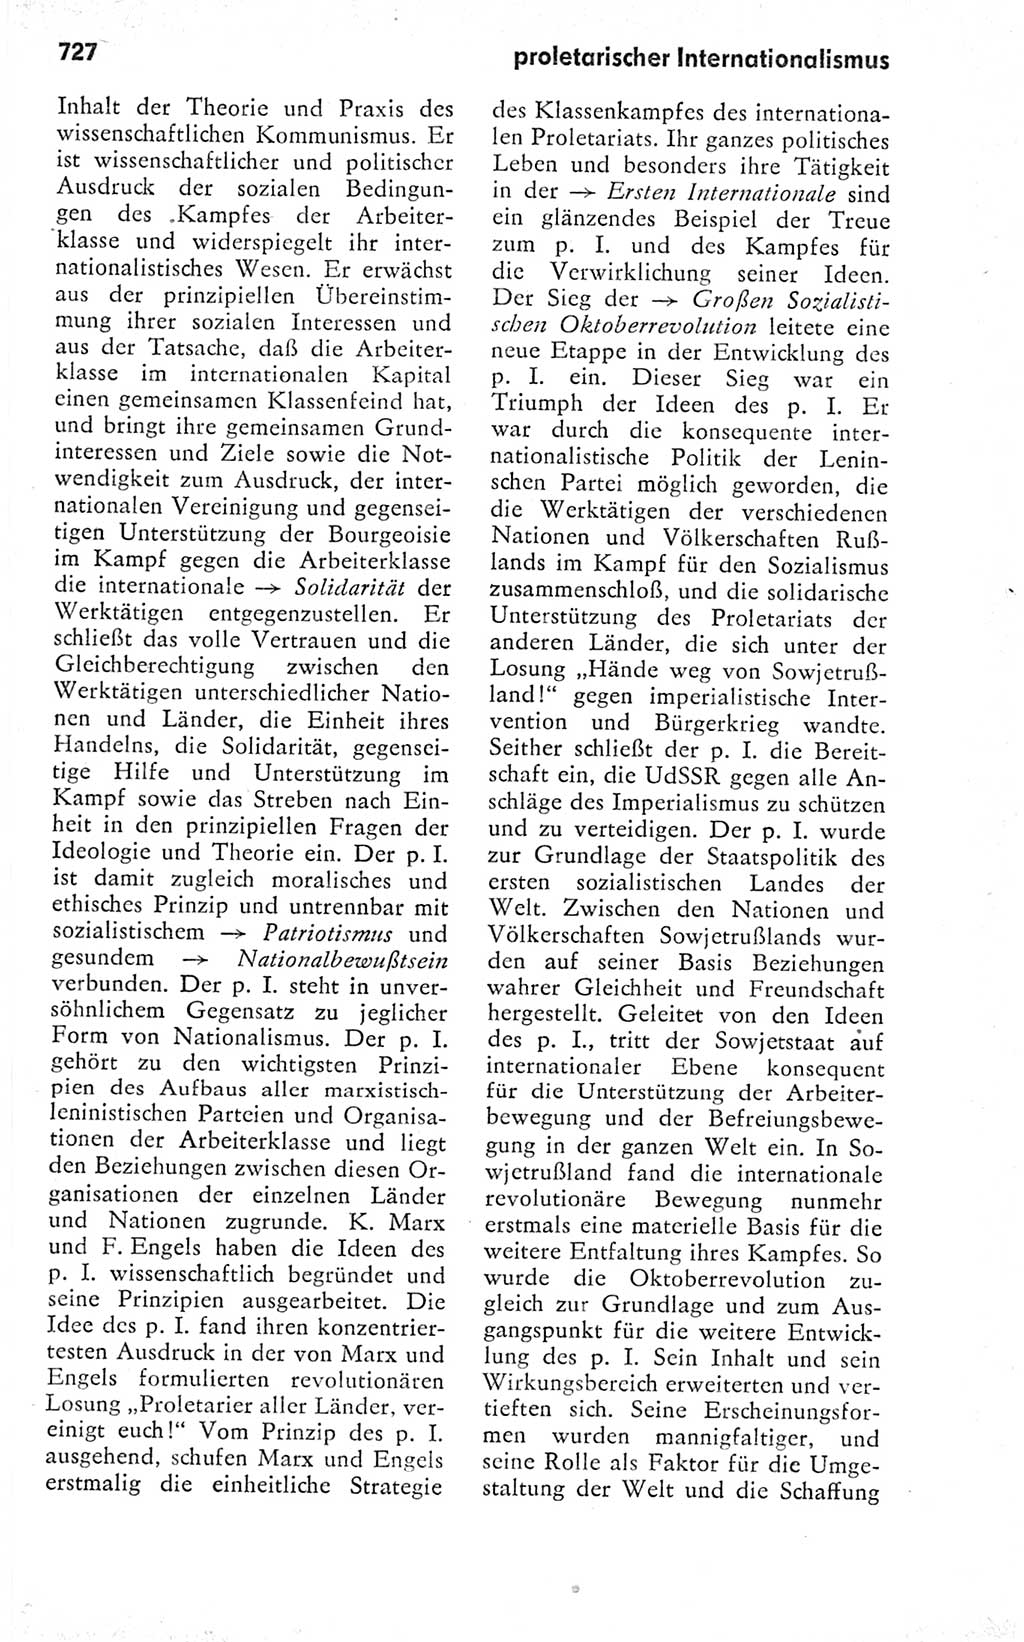 Kleines politisches Wörterbuch [Deutsche Demokratische Republik (DDR)] 1978, Seite 727 (Kl. pol. Wb. DDR 1978, S. 727)